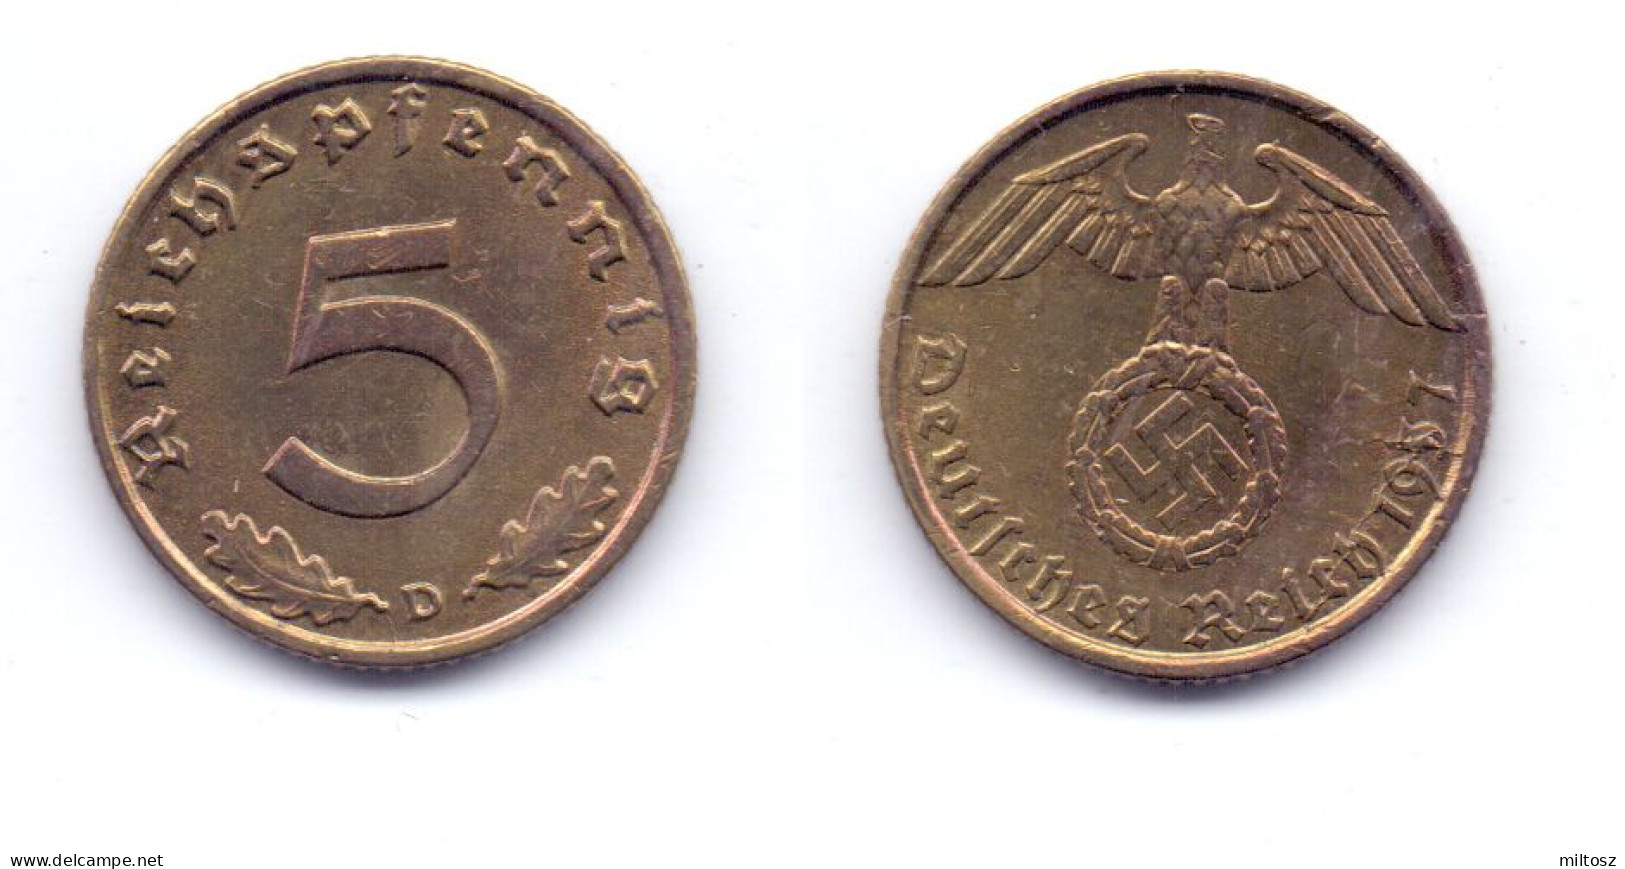 Germany 5 Reichspfennig 1937 D - 5 Reichspfennig